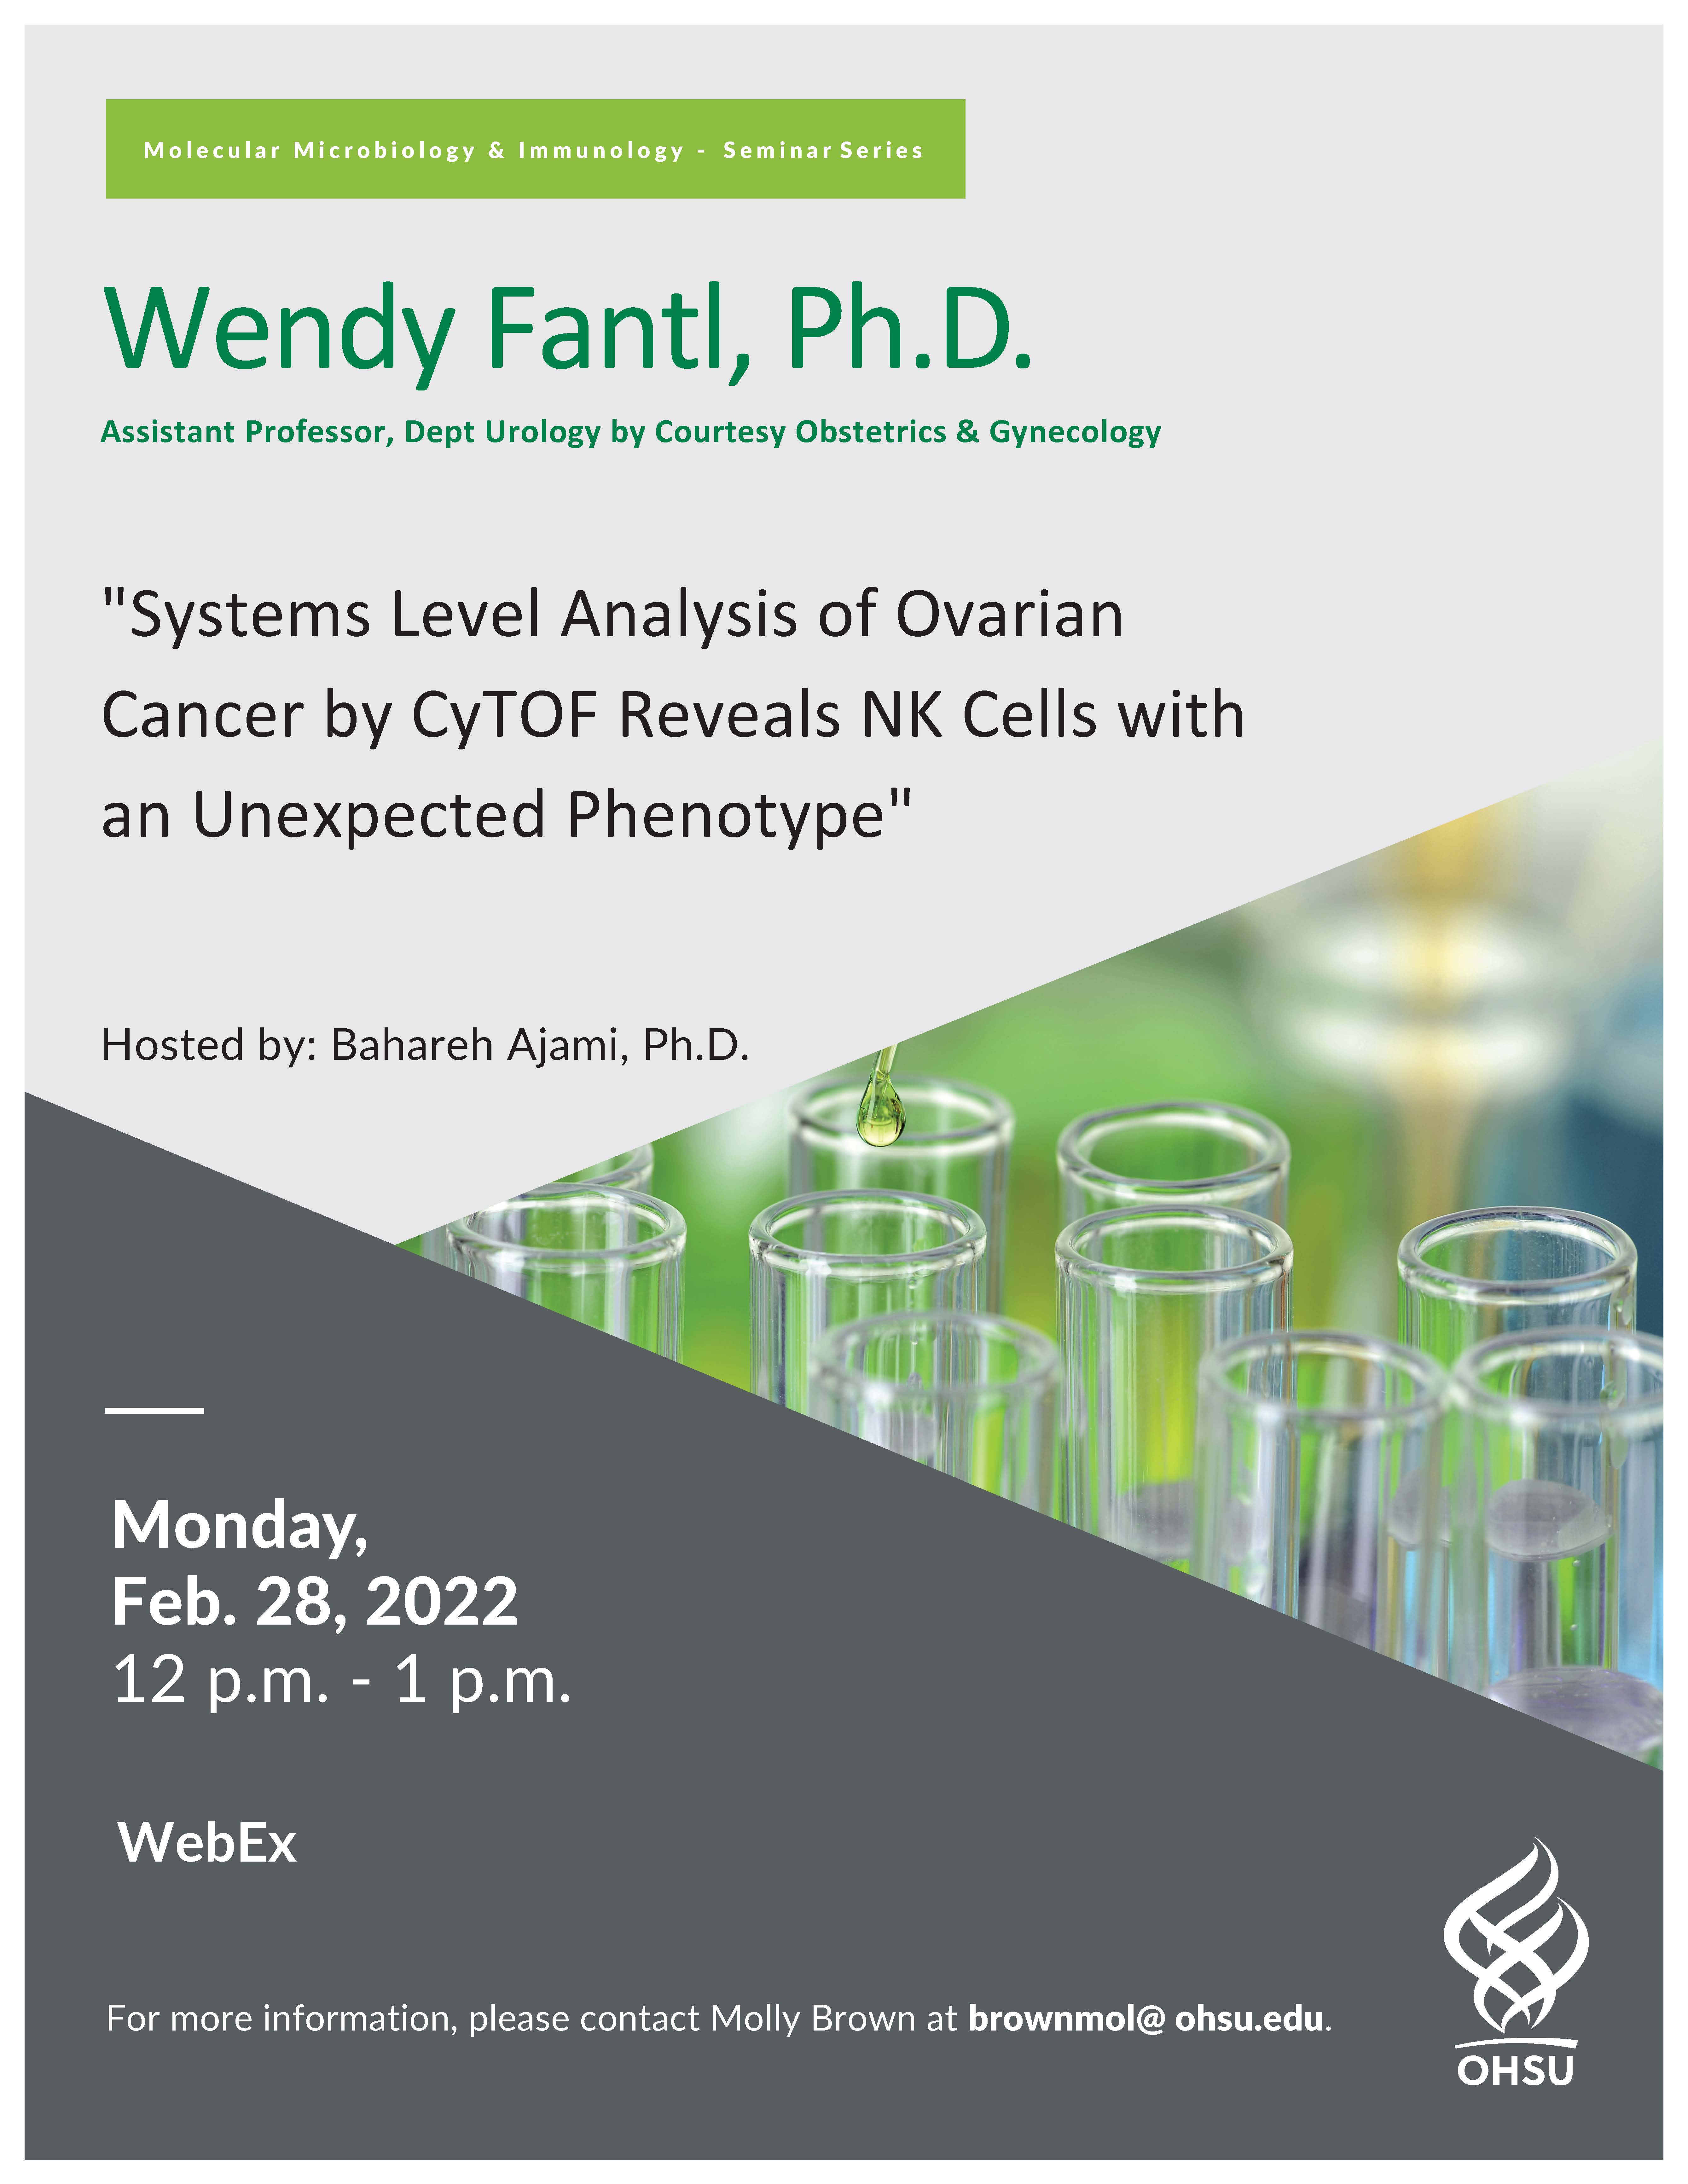 Dr. Wendy Fantl Flyer 2.28.2022